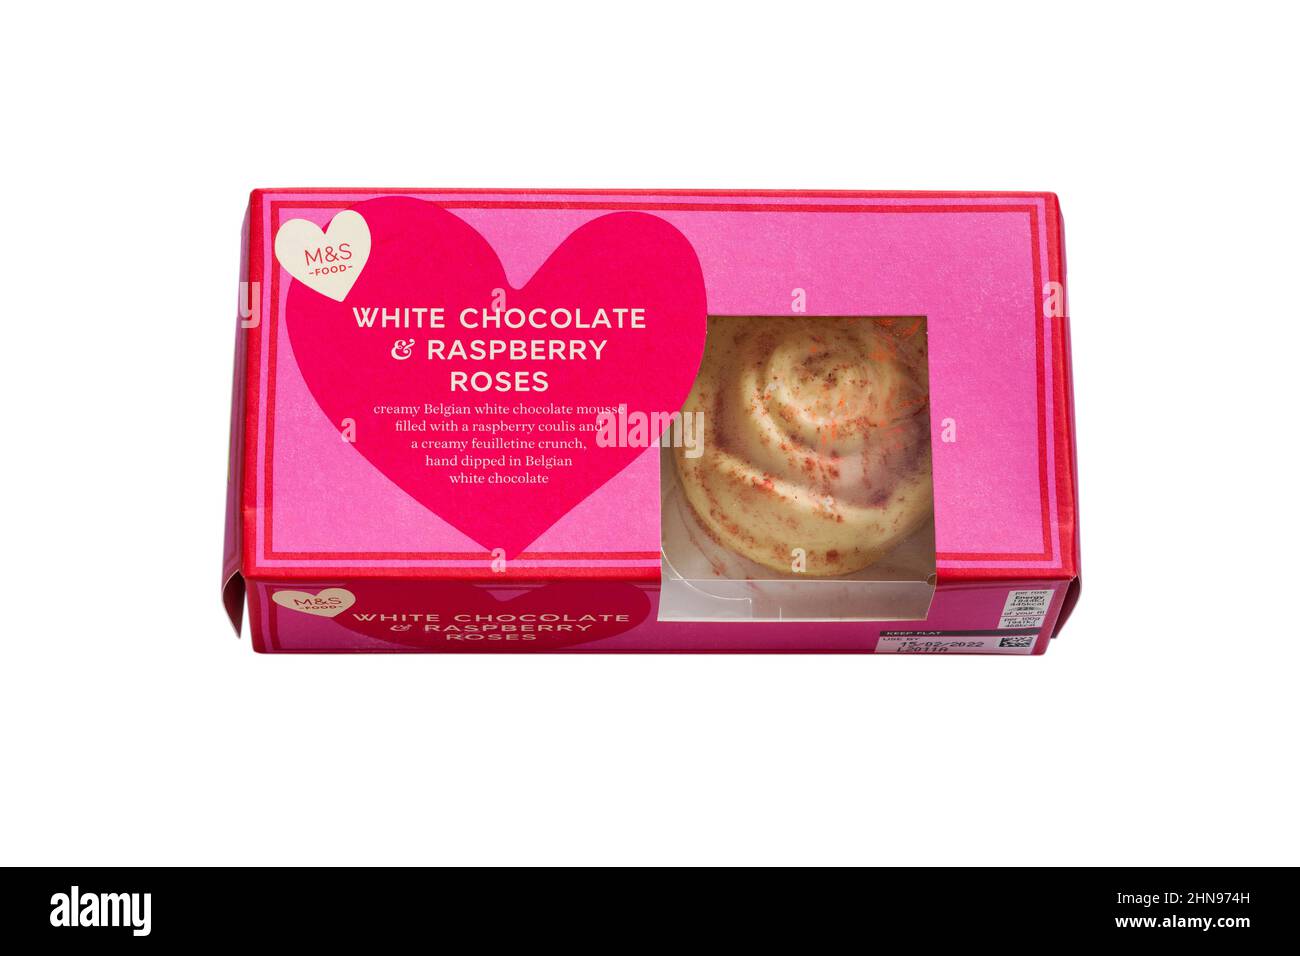 M&S mousse au chocolat blanc et aux roses des framboises dessert pour la Saint-Valentin dans une boîte isolée sur fond blanc Banque D'Images